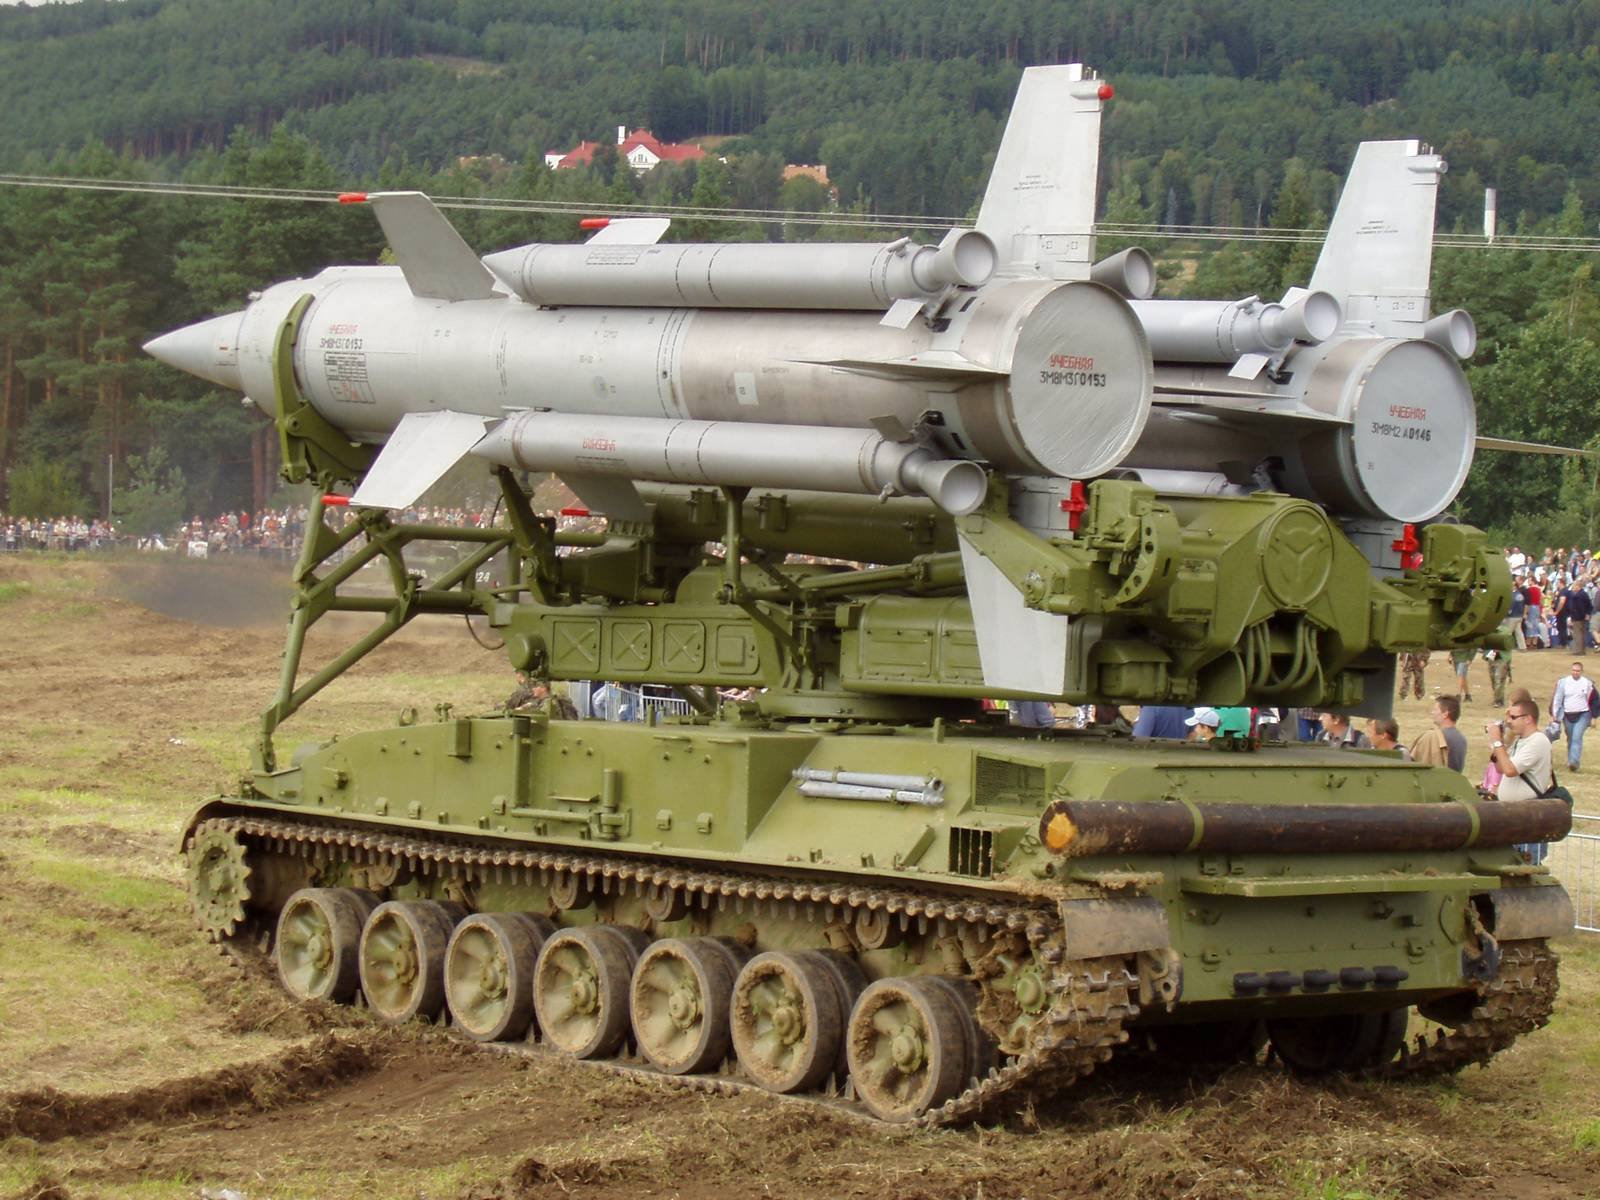 Зенитный ракетный комплекс "стрела-10" (ссср/россия)